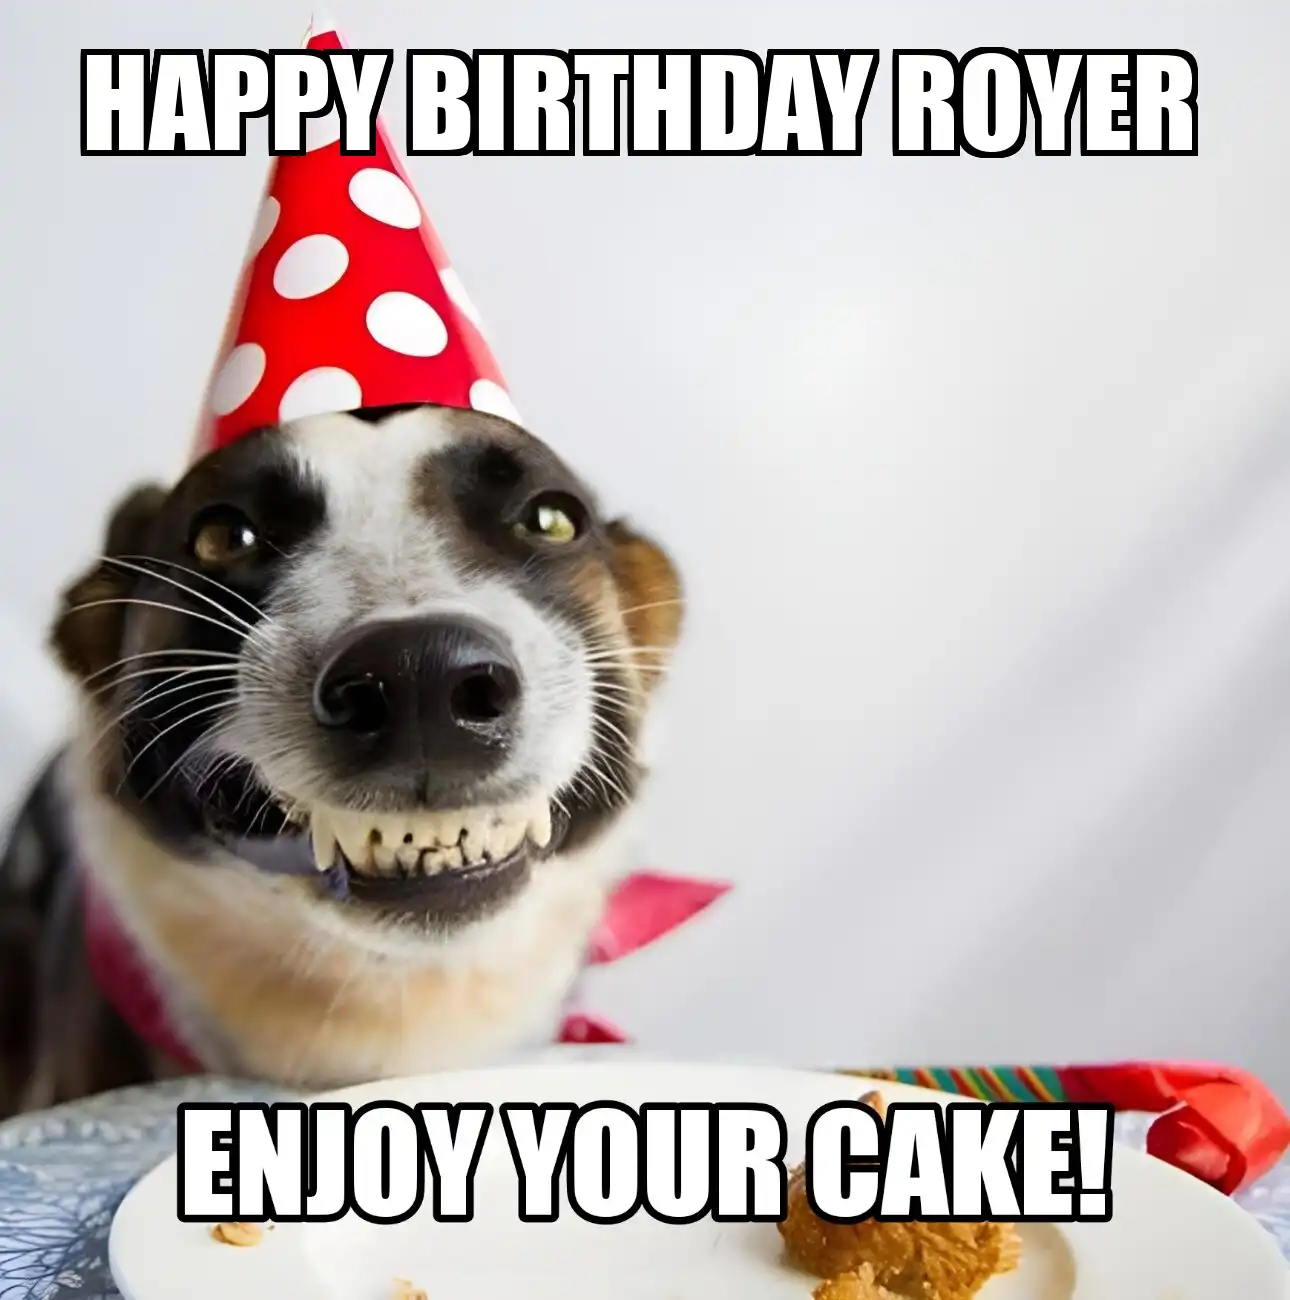 Happy Birthday Royer Enjoy Your Cake Dog Meme